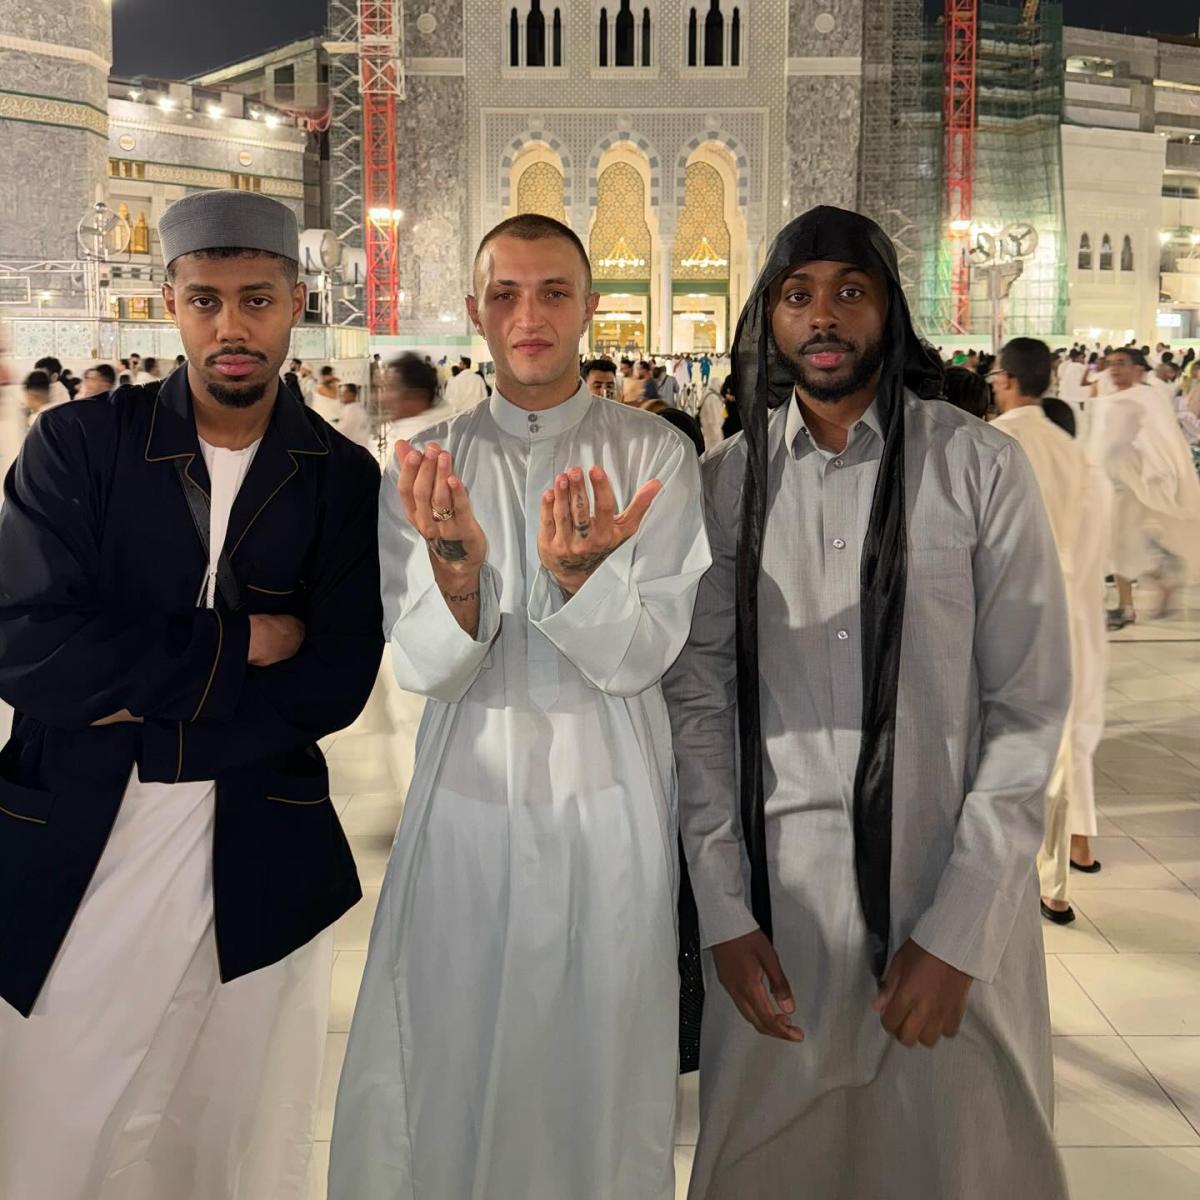 أنور حديد في مكة المكرمة "مرة مع إخواني الحقيقيين"